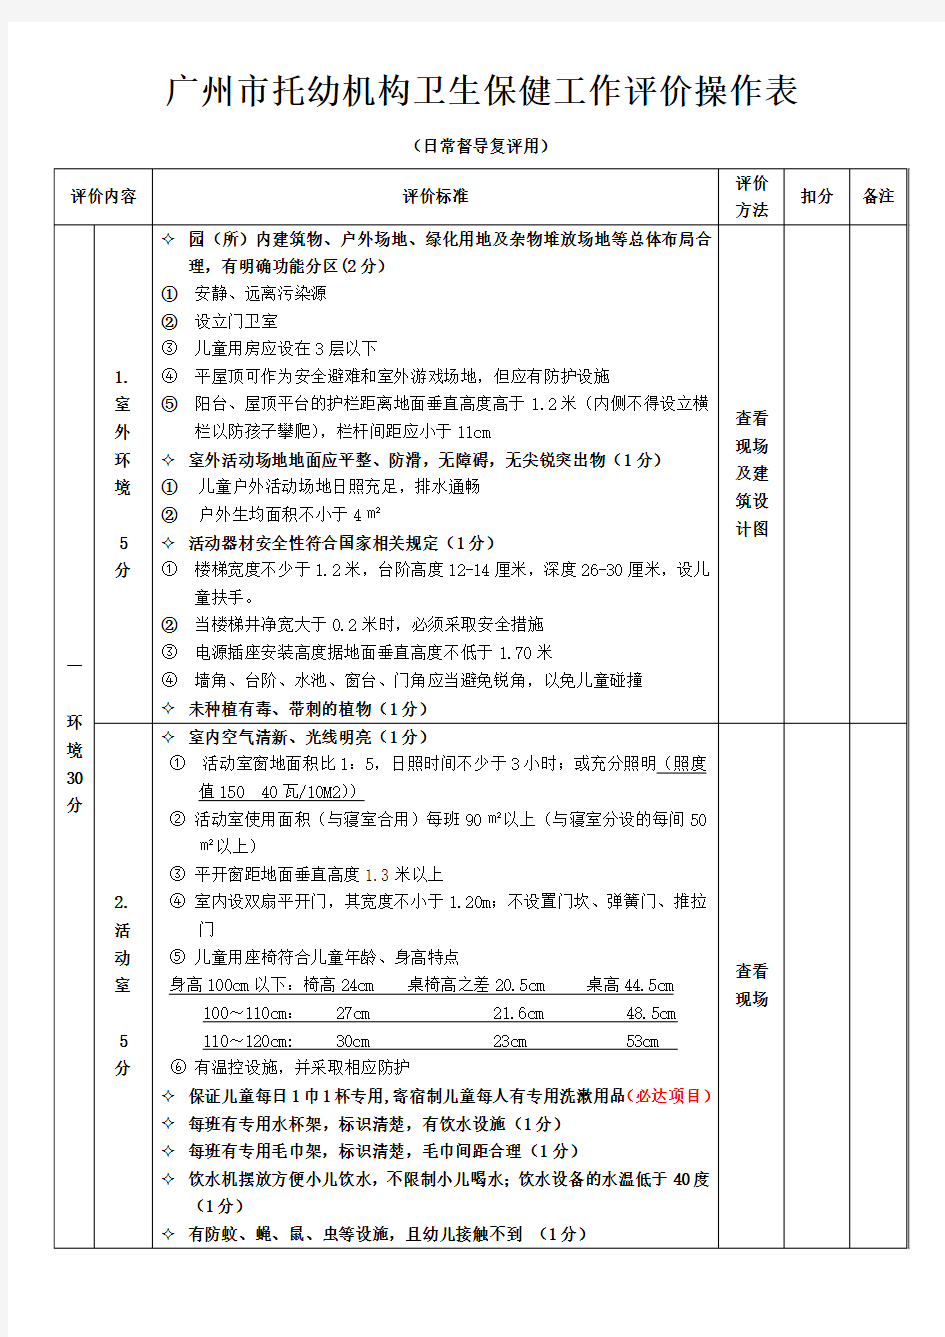 广州市托幼机构卫生保健评价标准 -